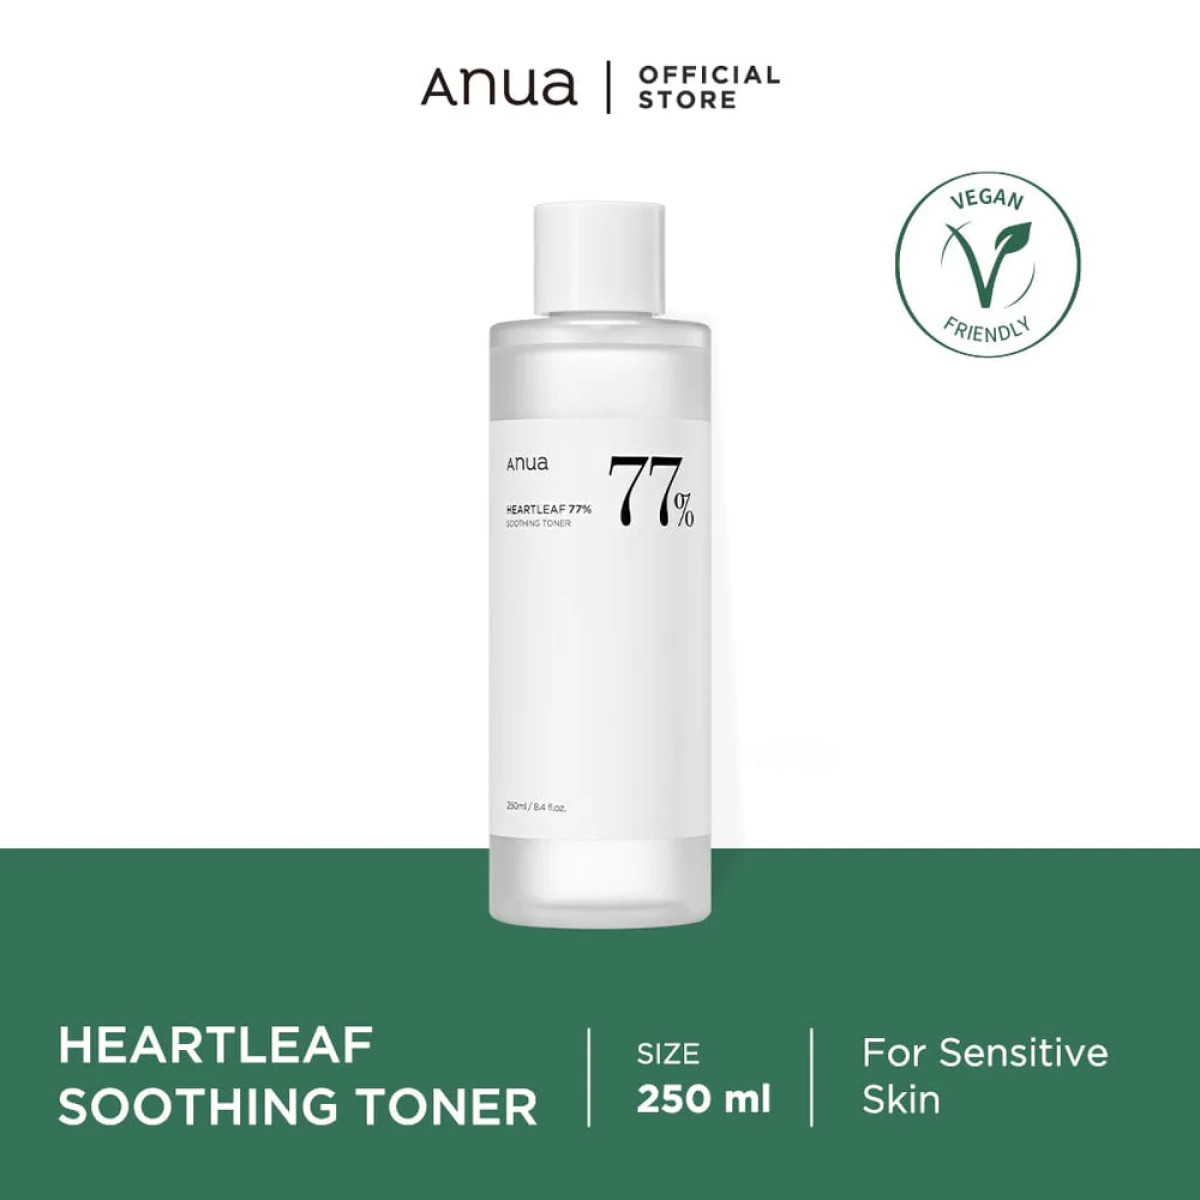 Anua - Heartleaf 77% Soothing Toner (Neme Doyuran Cilt Işıltısını Sağlayan Ödüllü Toner)